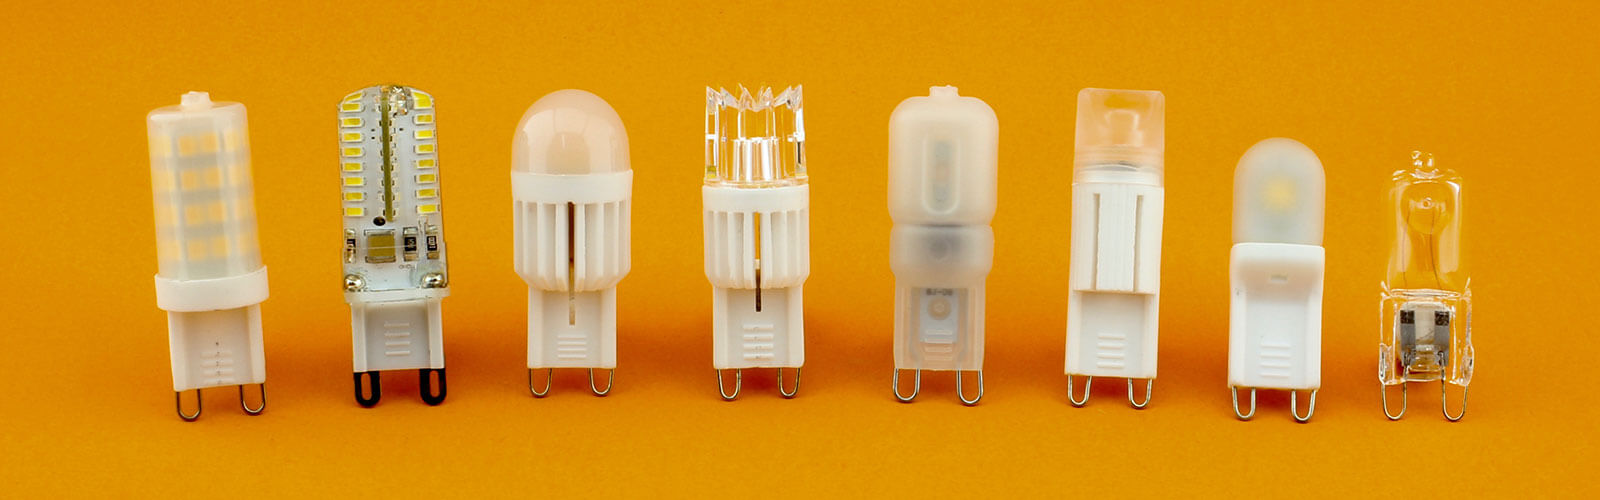 g9 led bulbs 1600px